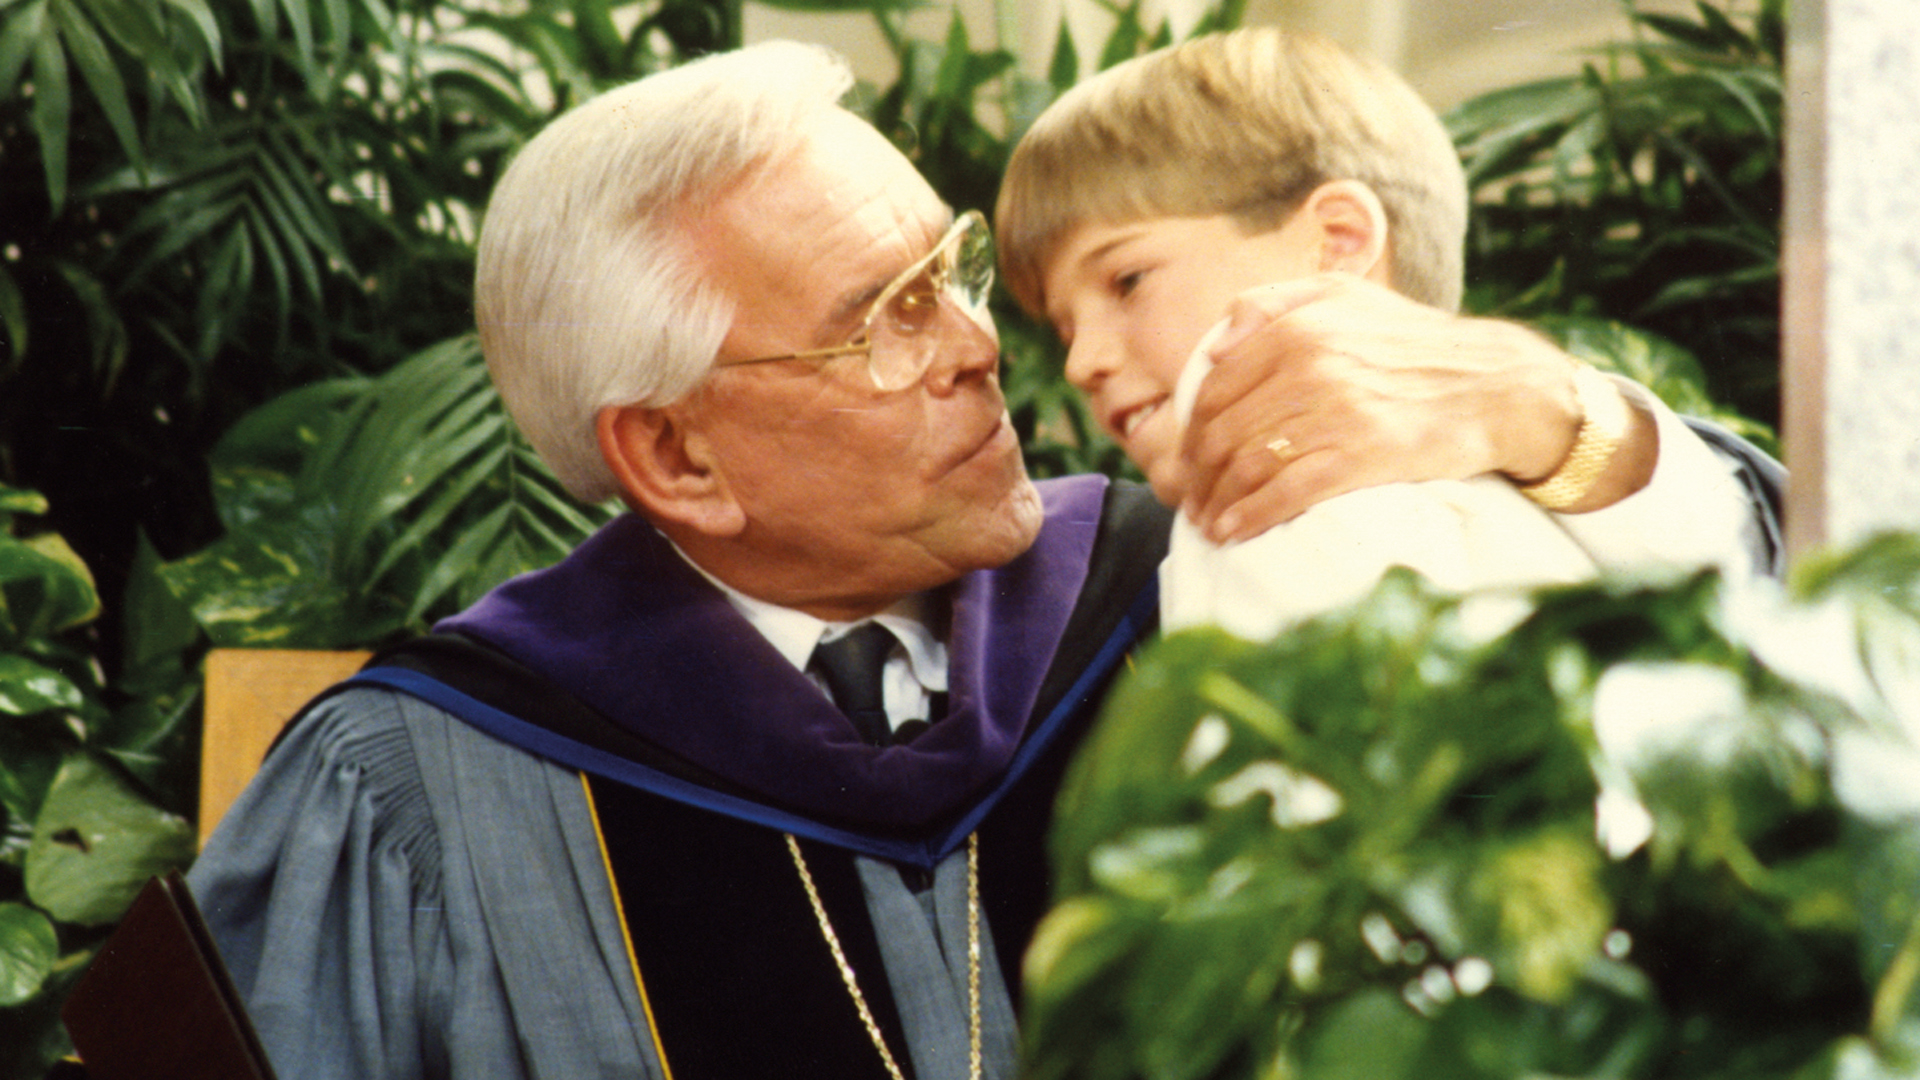 Bobby mit seinem Großvater Robert H. Schuller. Die Robe des Gemeindegründers trägt heute sein Enkel